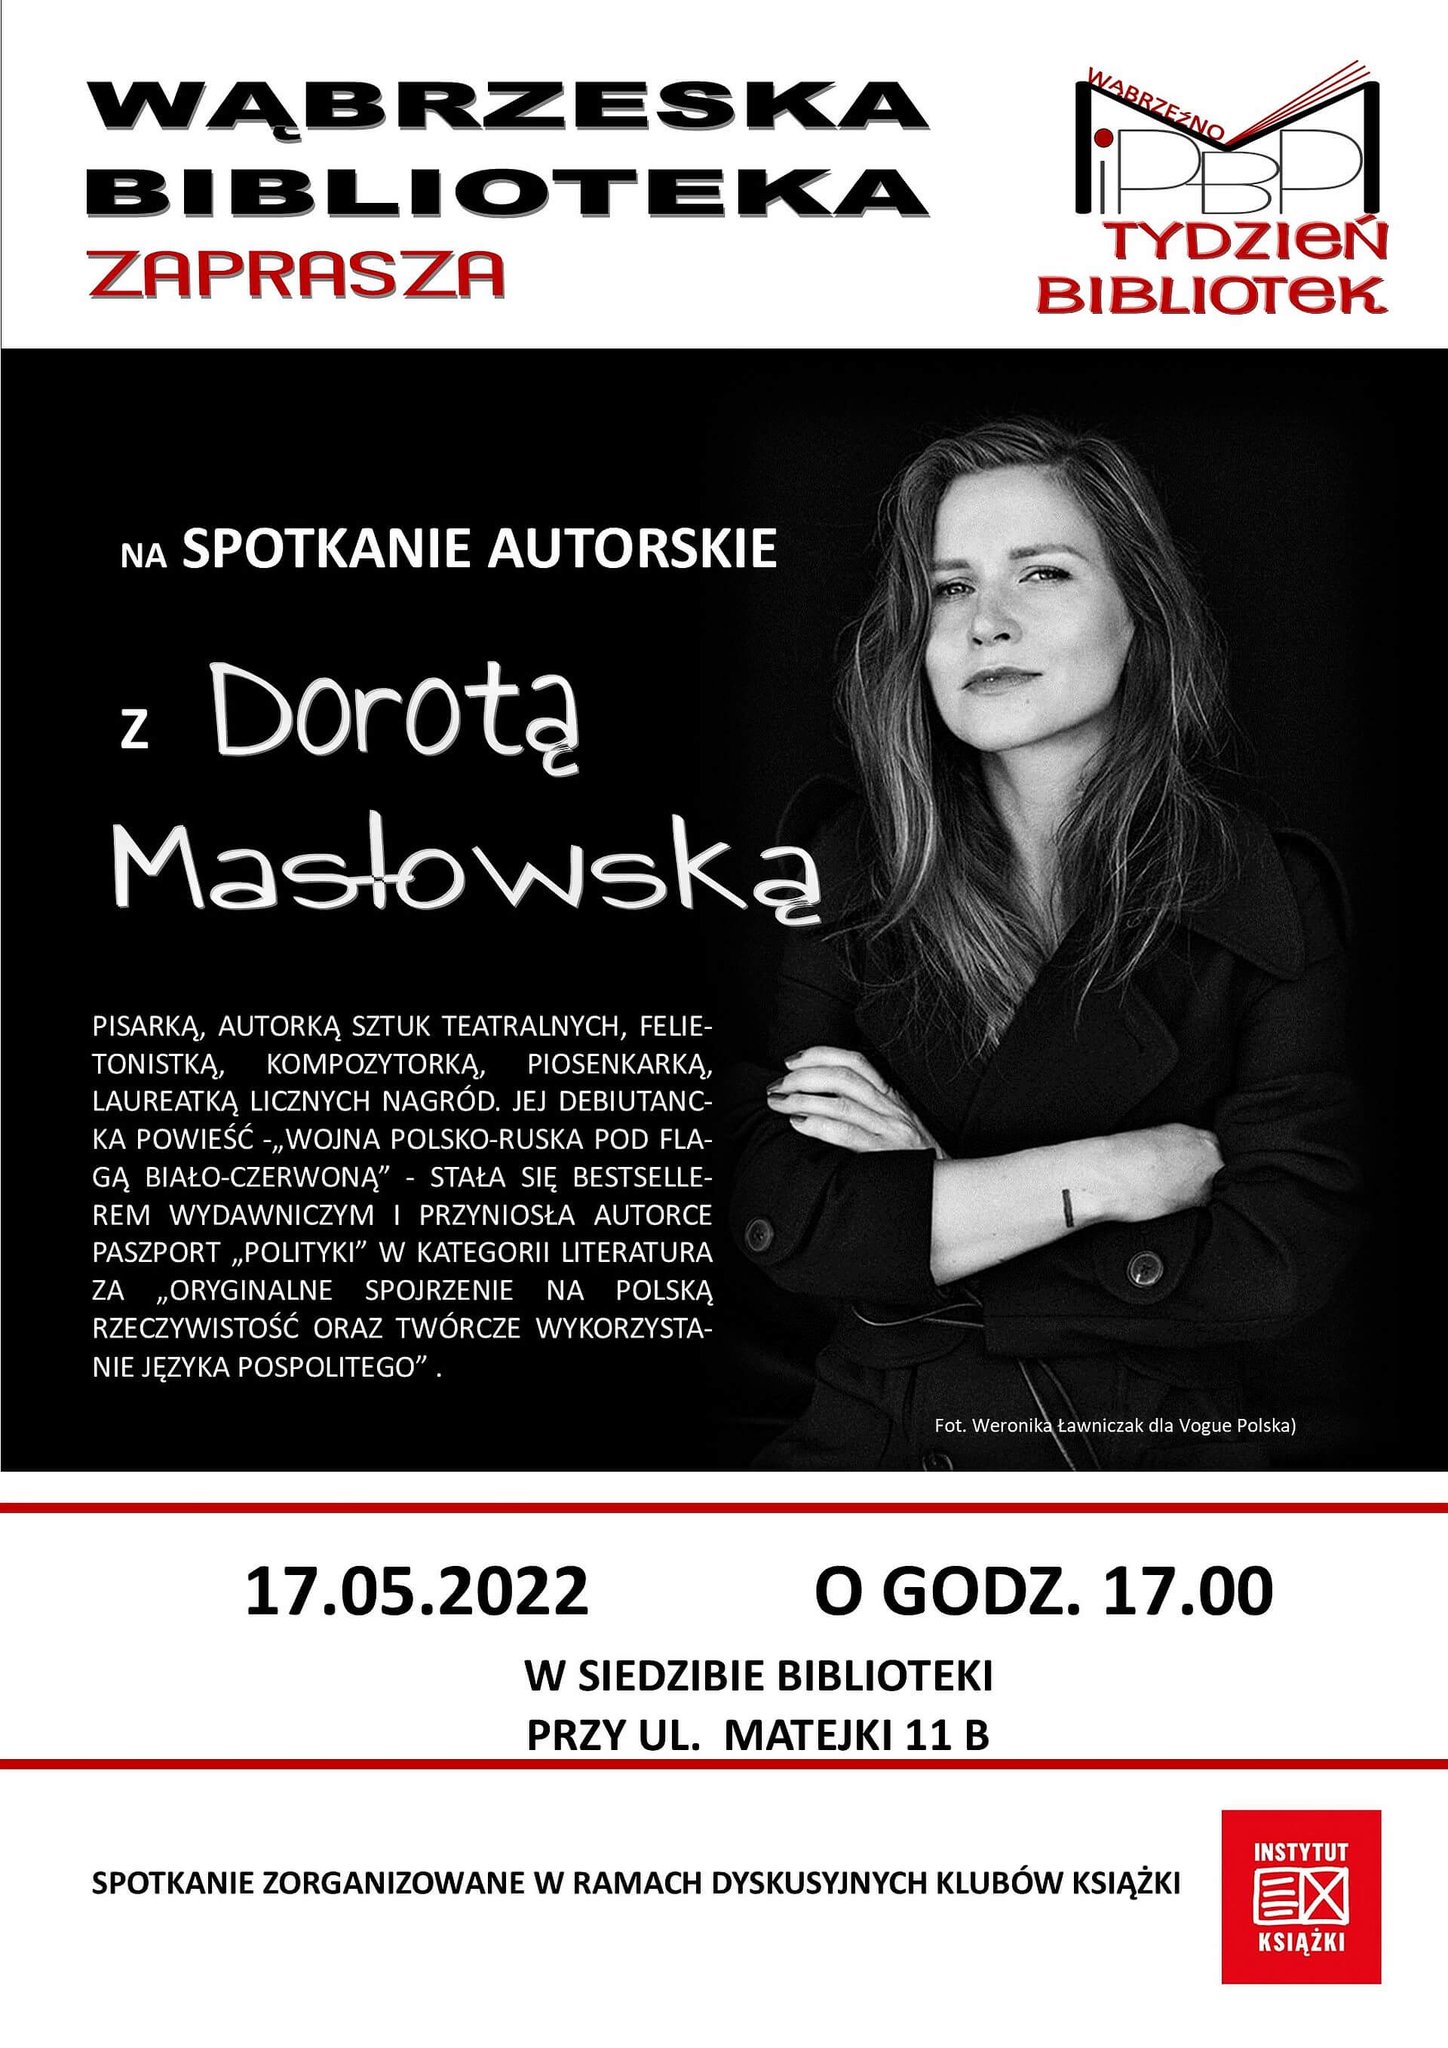 We wtorek 17 maja br. zapraszamy na spotkanie z Dorotą Masłowską